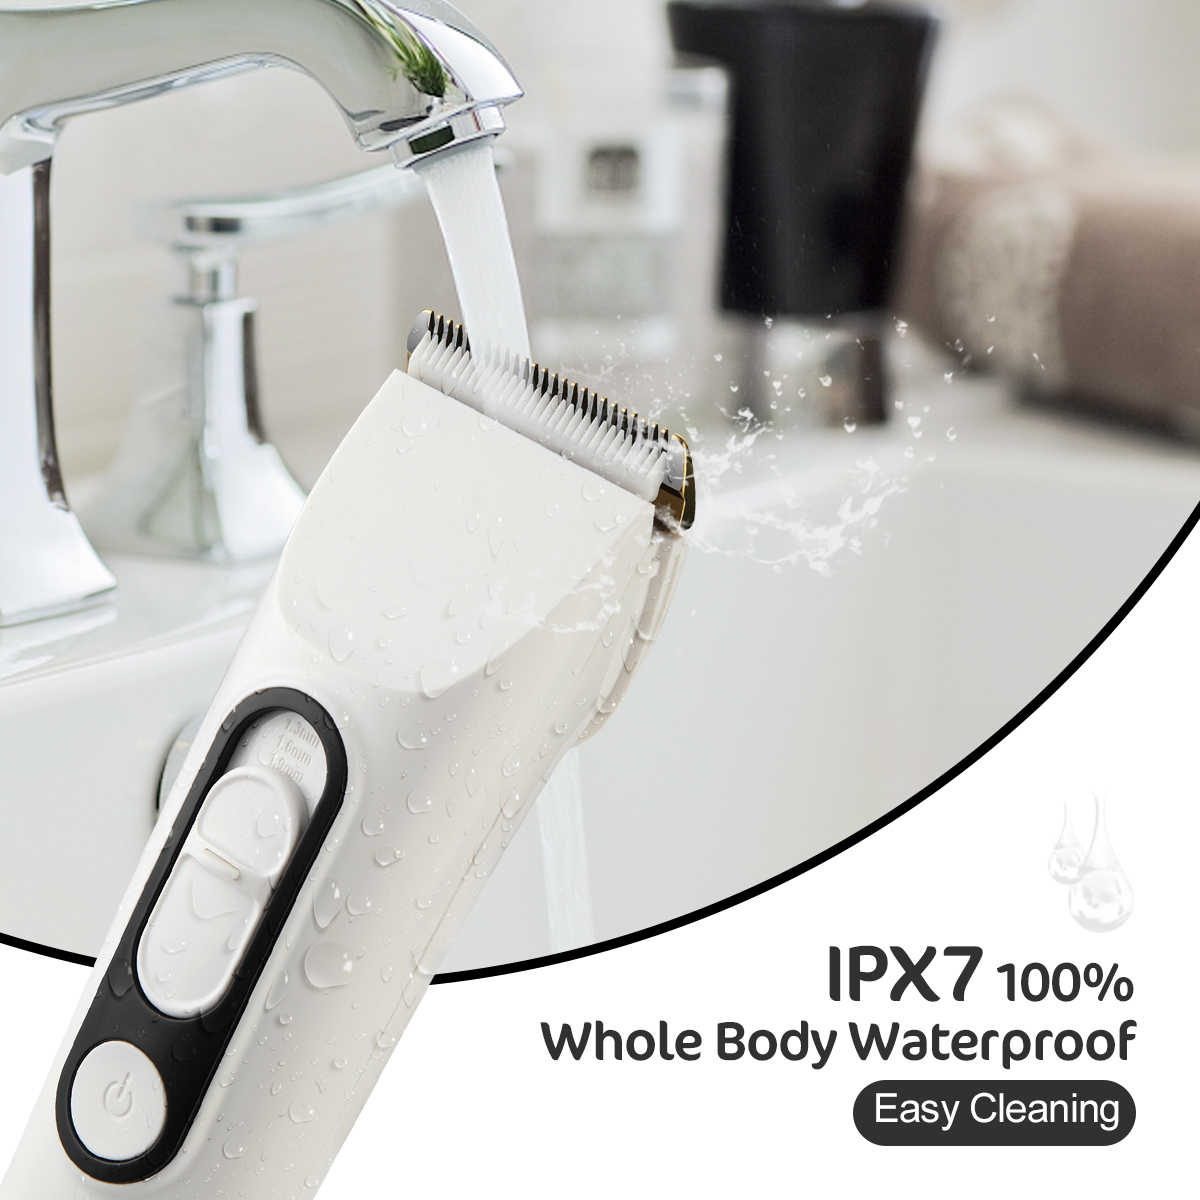 جهاز تشذيب الشعر اللاسلكي الهادئ IPX7 المقاوم للماء - 3 